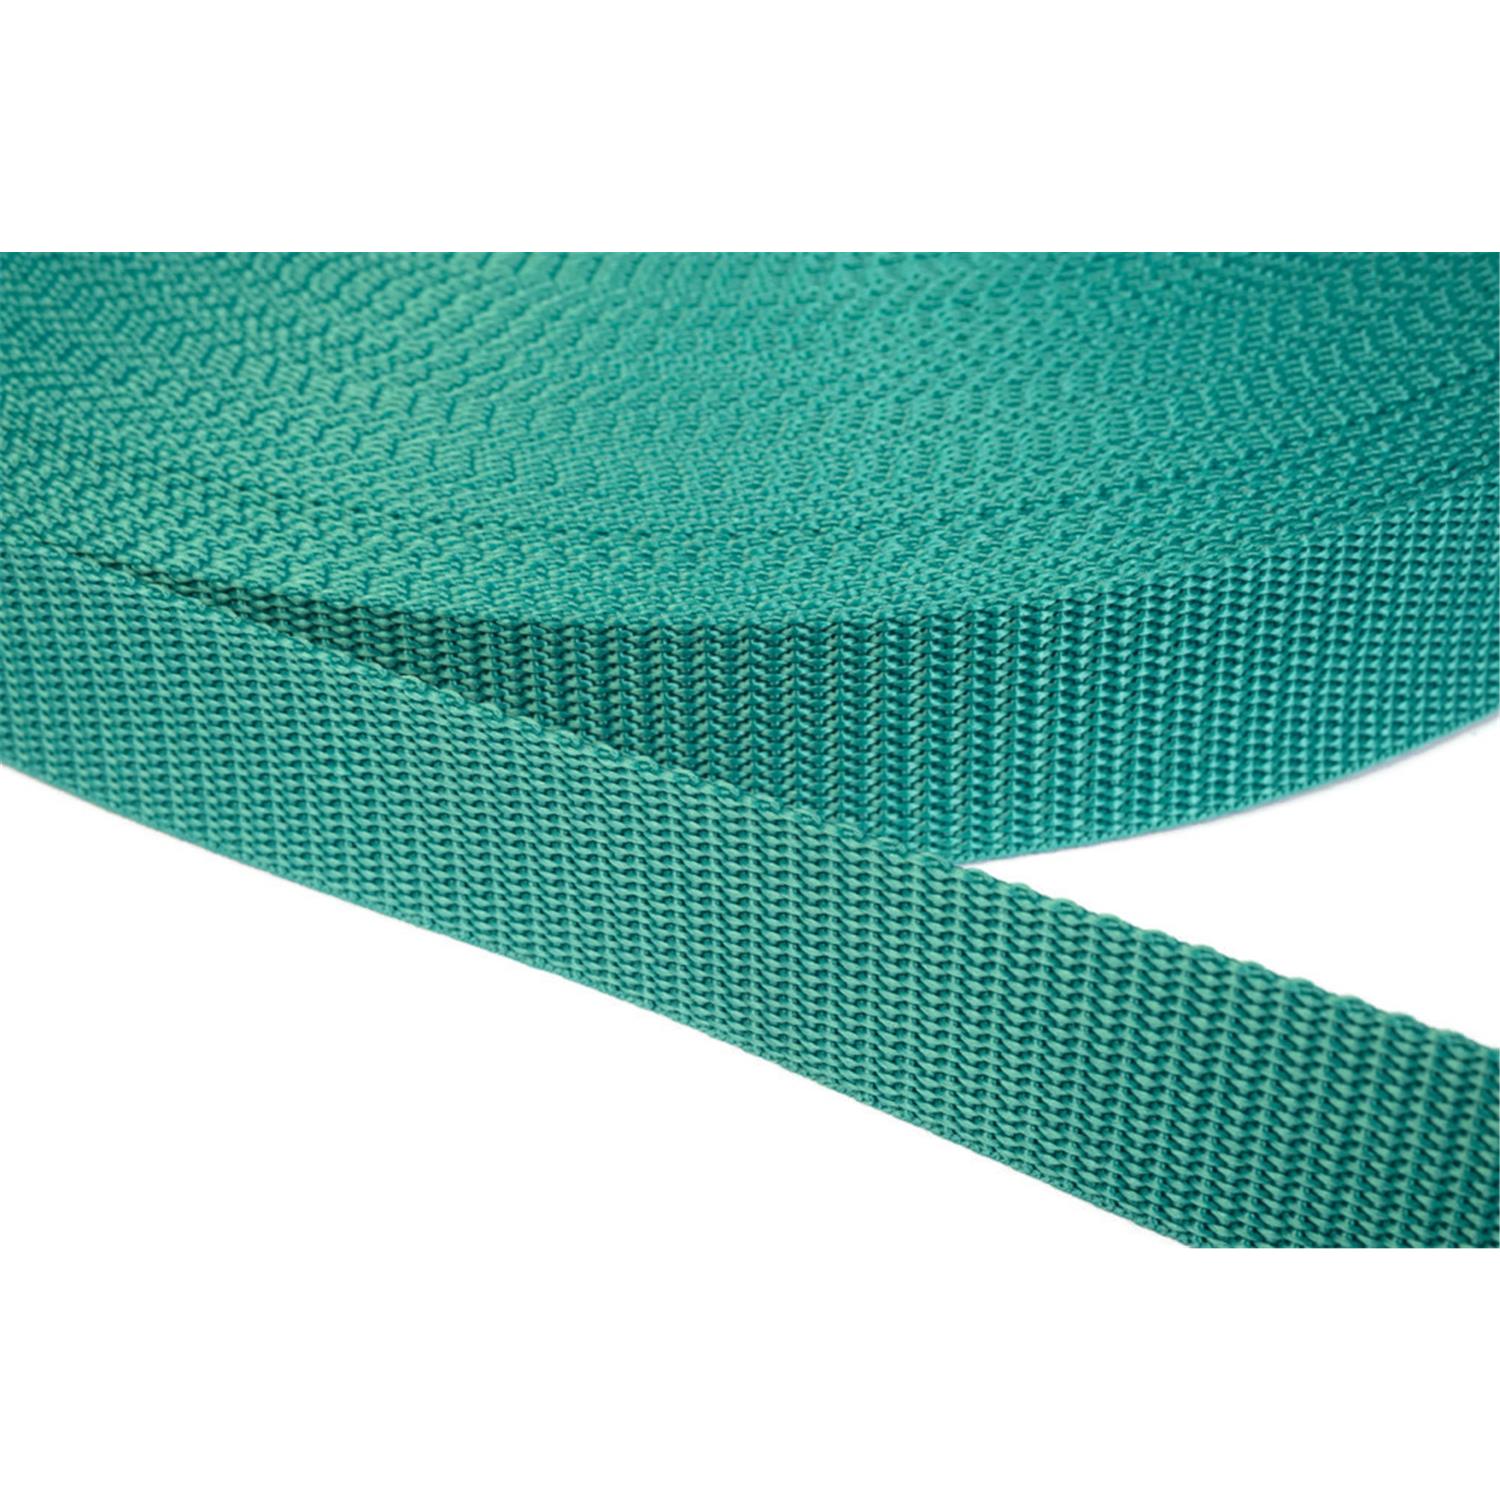 Gurtband 50mm breit aus Polypropylen in 41 Farben 31 - smaragdgrün 6 Meter